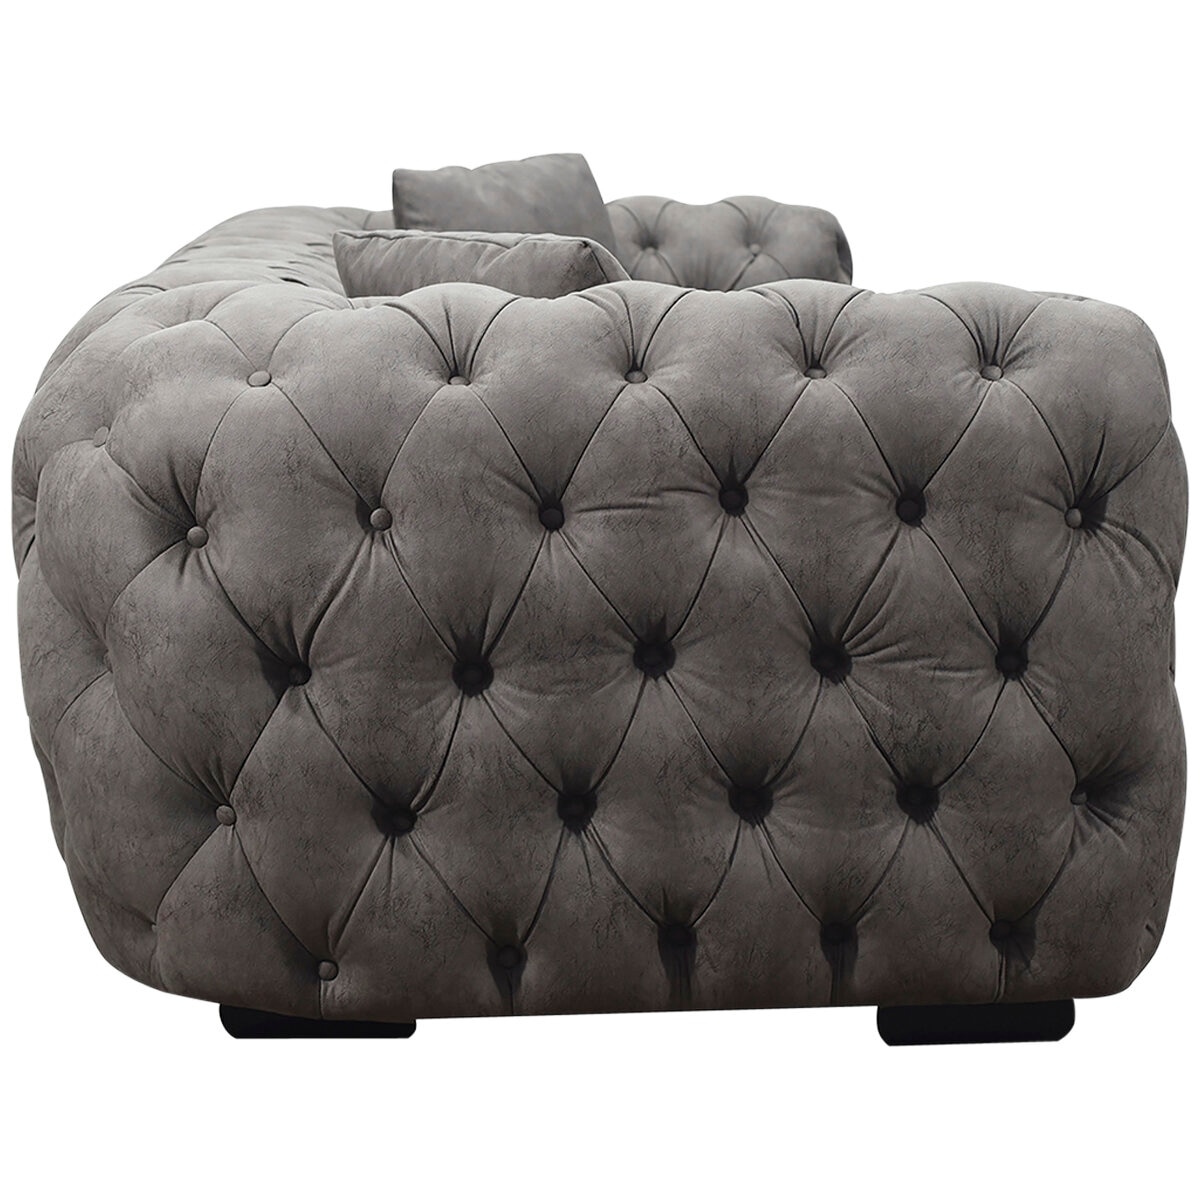 Moran Portia Illusion Fabric 3 Seater Sofa